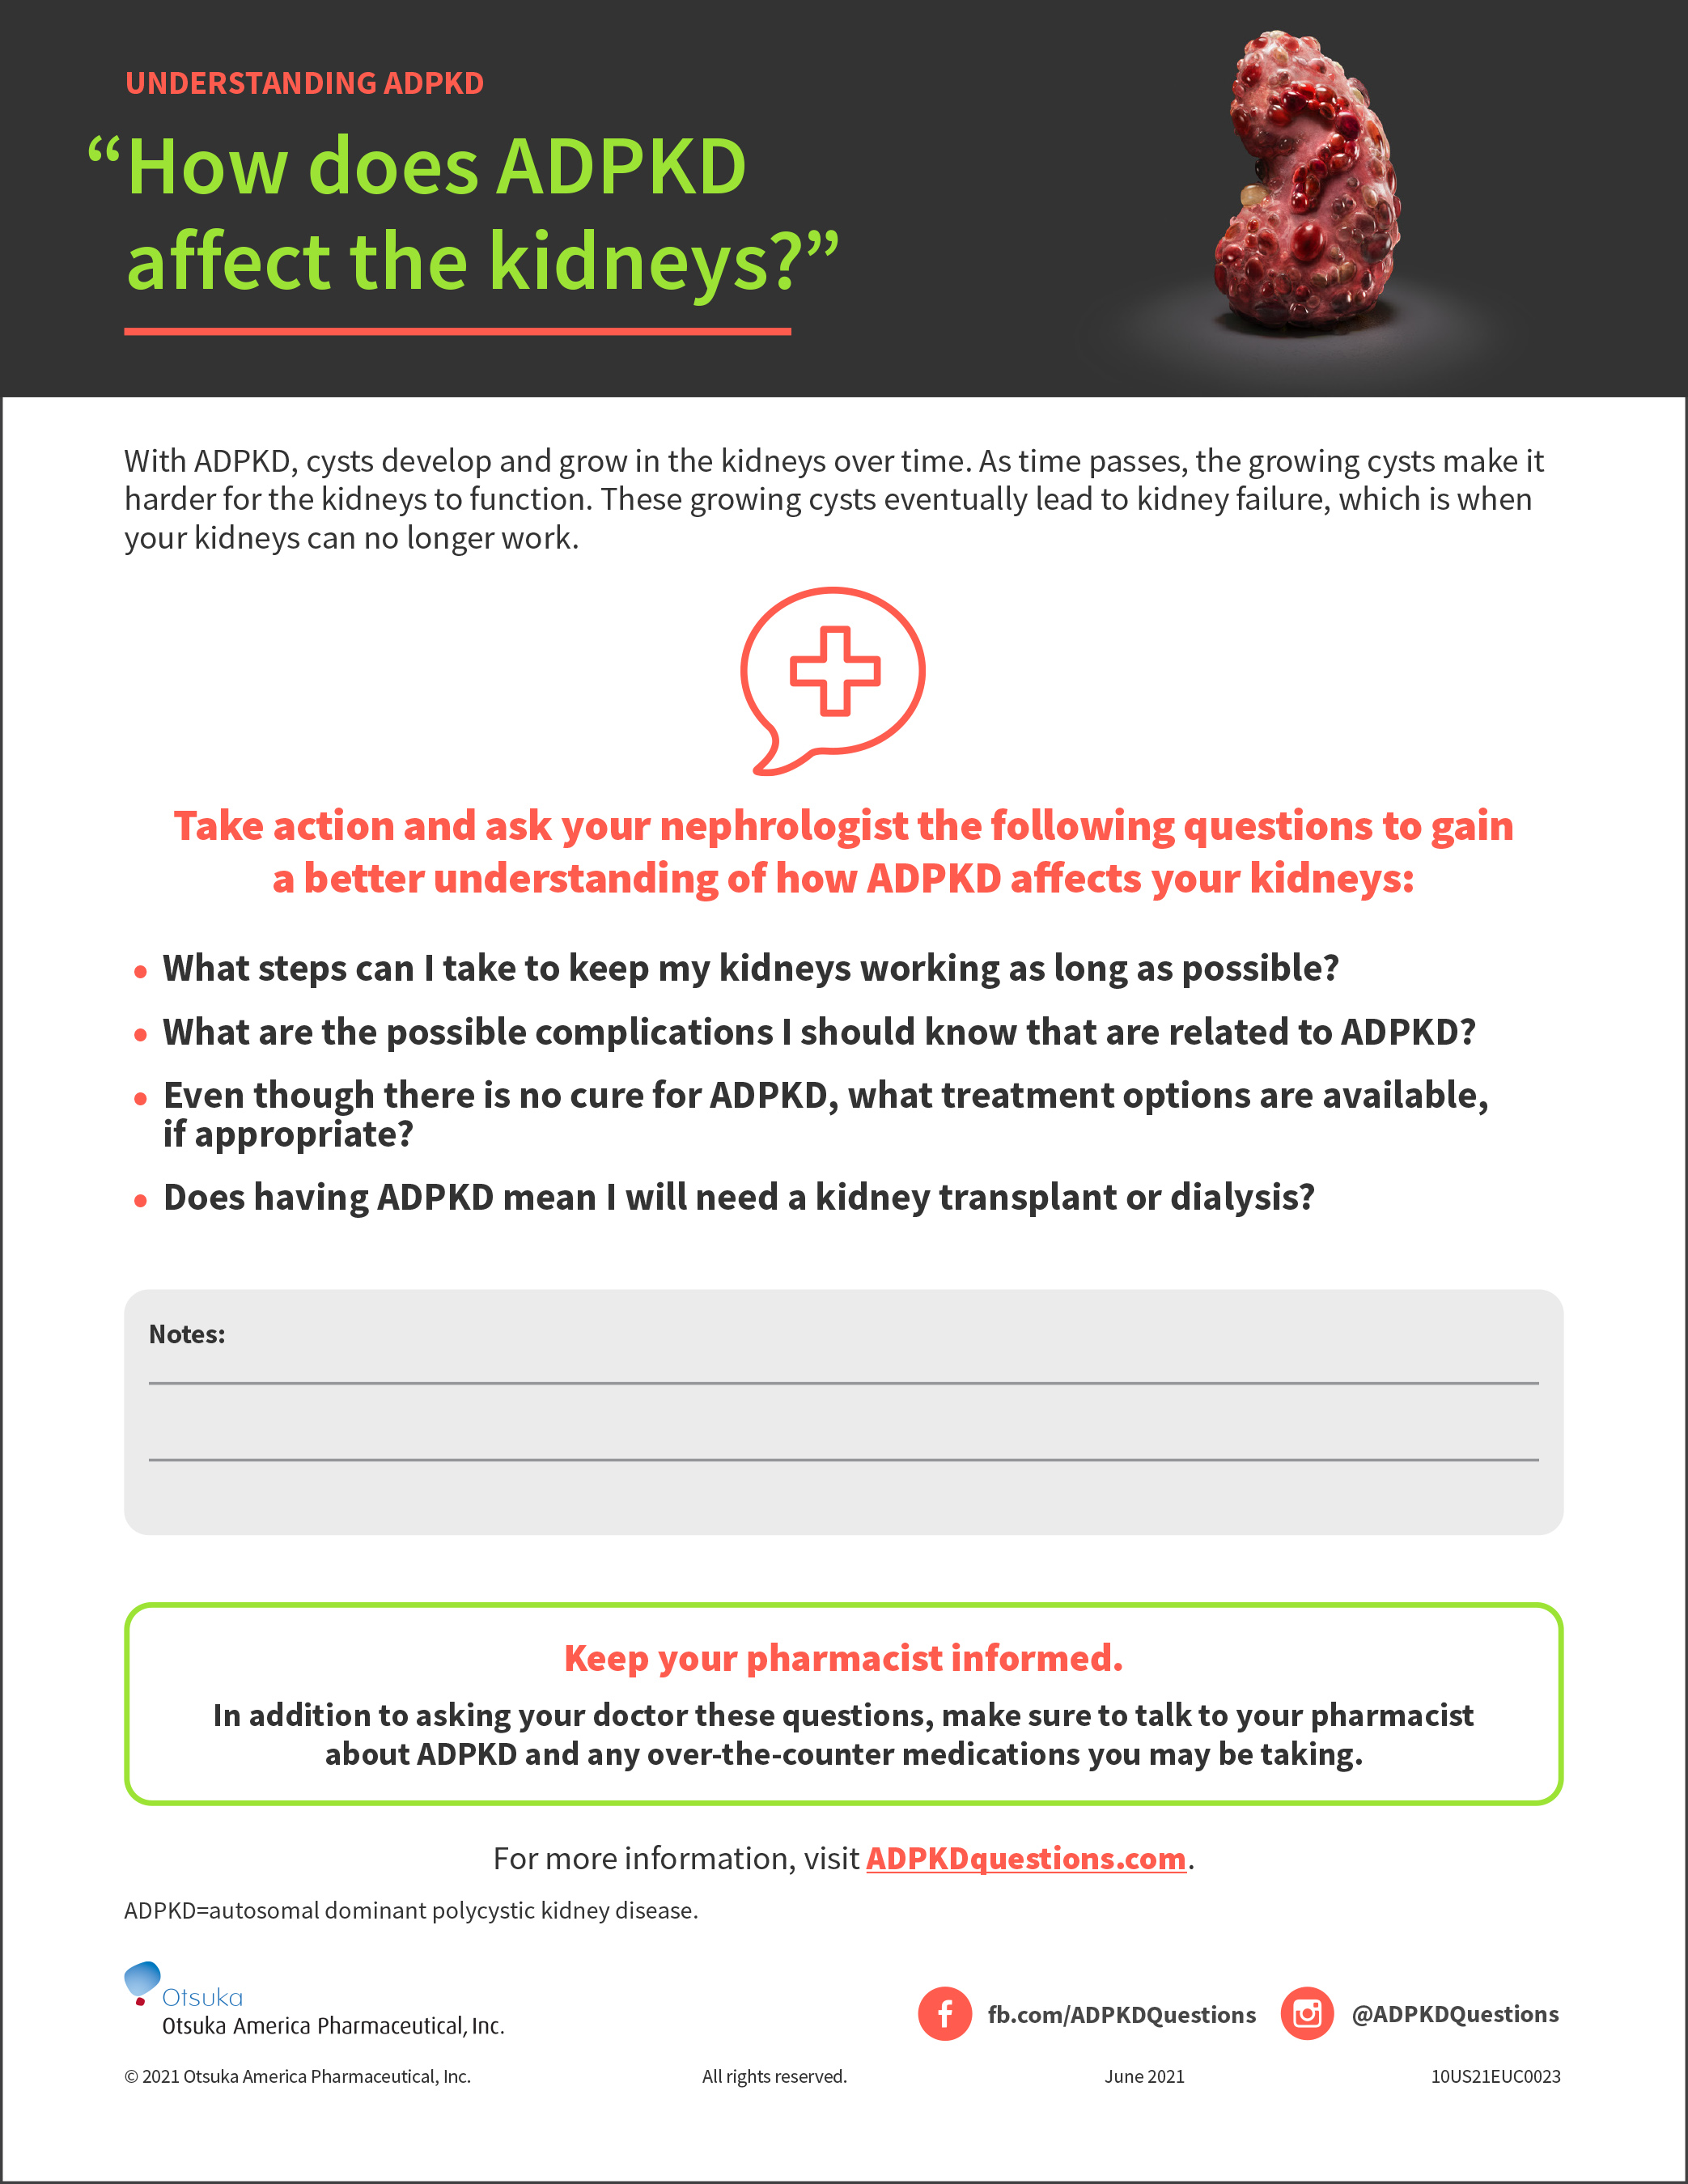 “How does ADPKD affect the kidneys?”